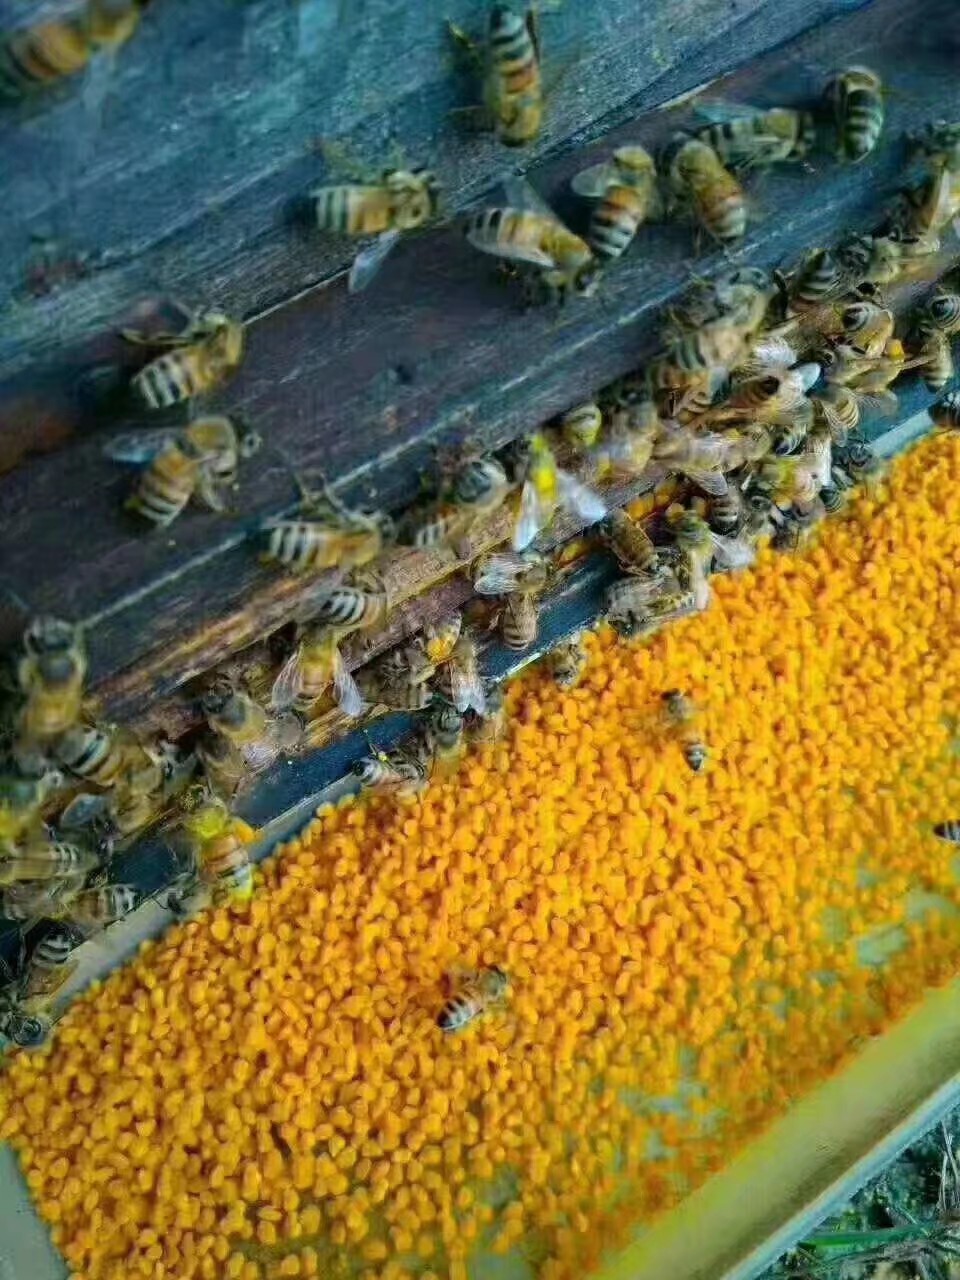 官宣纯正天然荷花蜂花粉土蜂蜜自产食用蜂巢蜜特产直销野生农家蜜